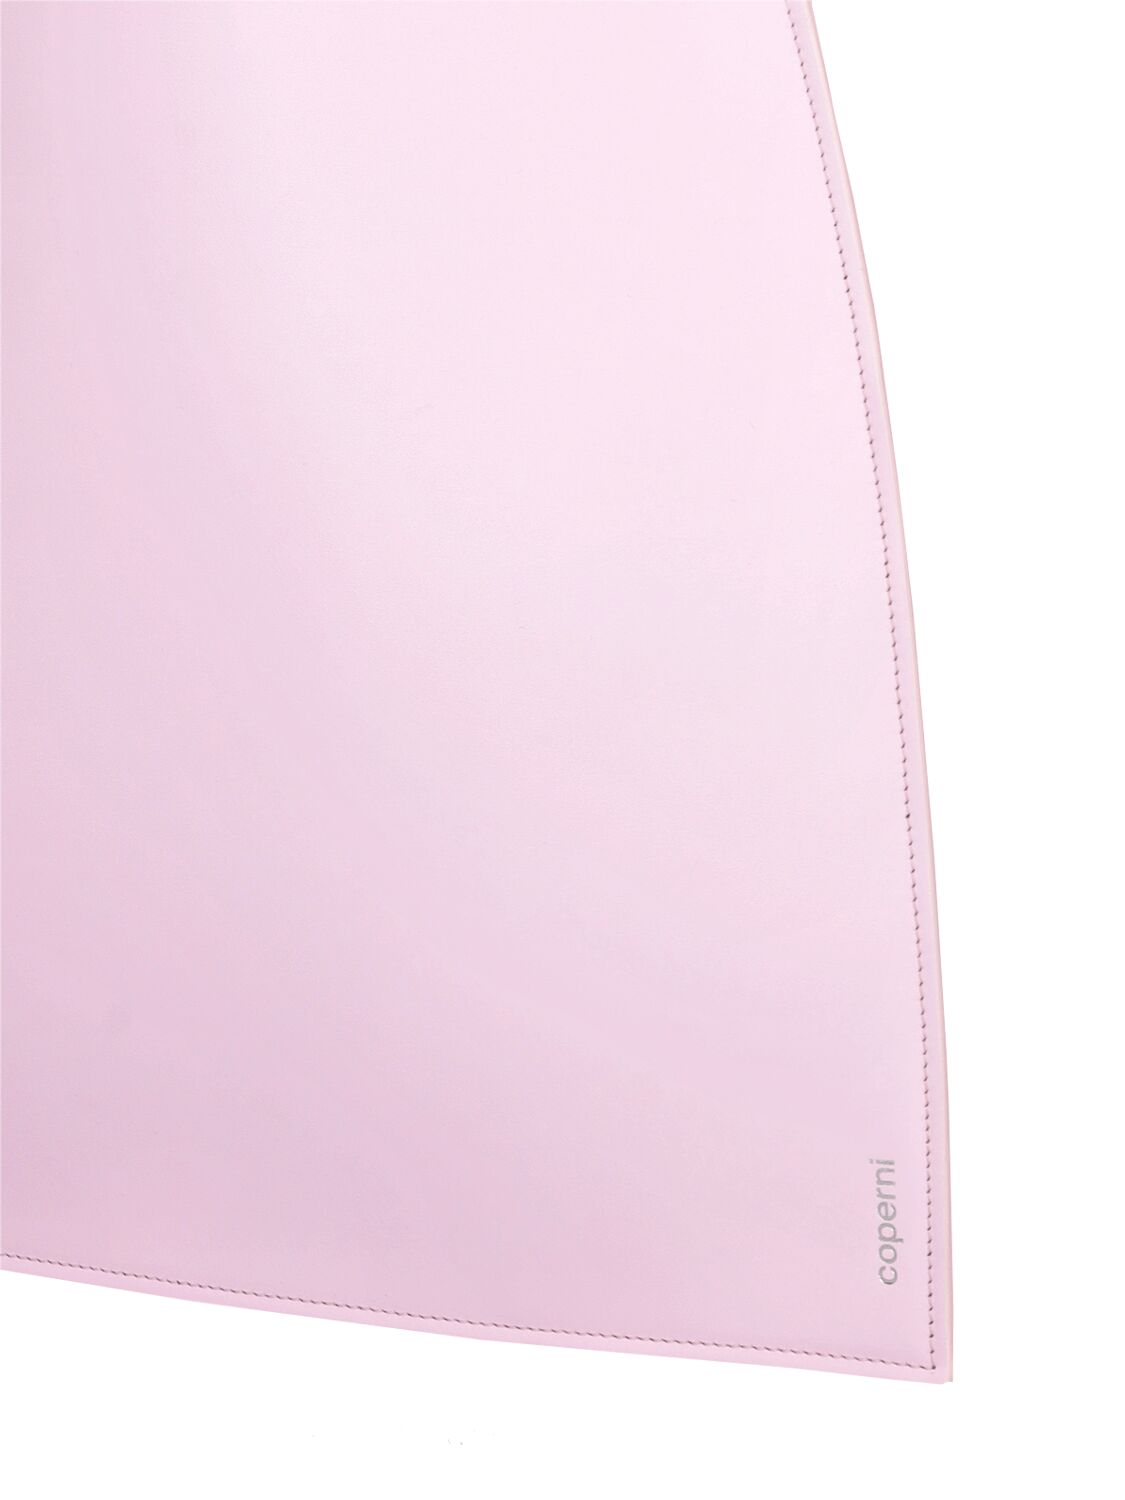 Shop Coperni Heart Leather Shoulder Bag In Light Pink